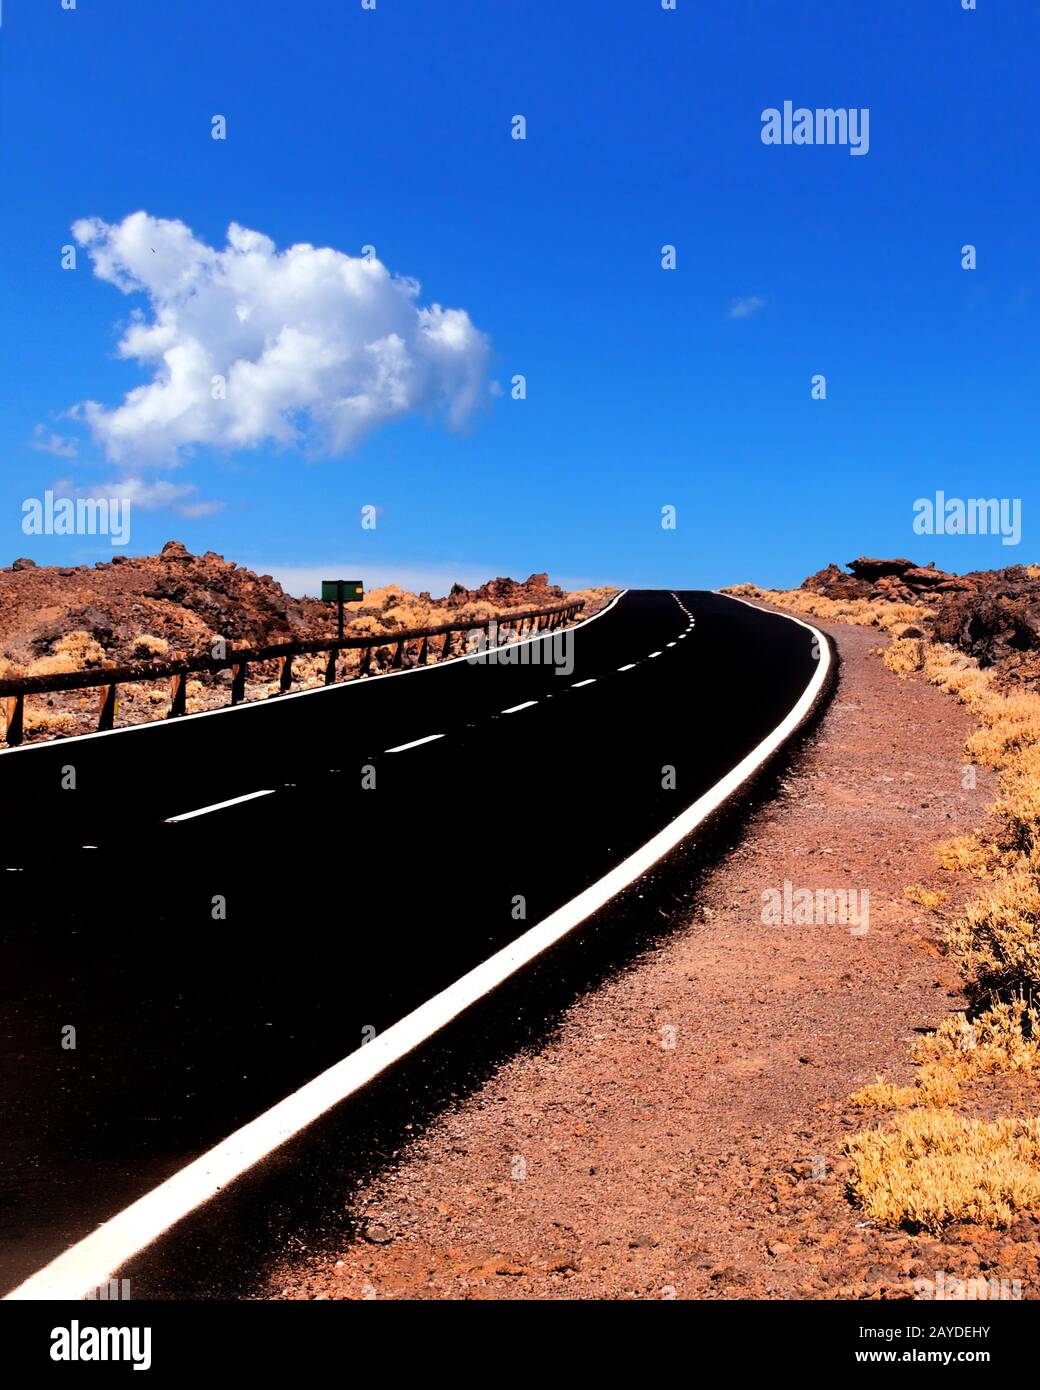 une route vide à deux voies qui se courbe à l'horizon dans un paysage désertique accidenté avec ciel bleu nuageux Banque D'Images